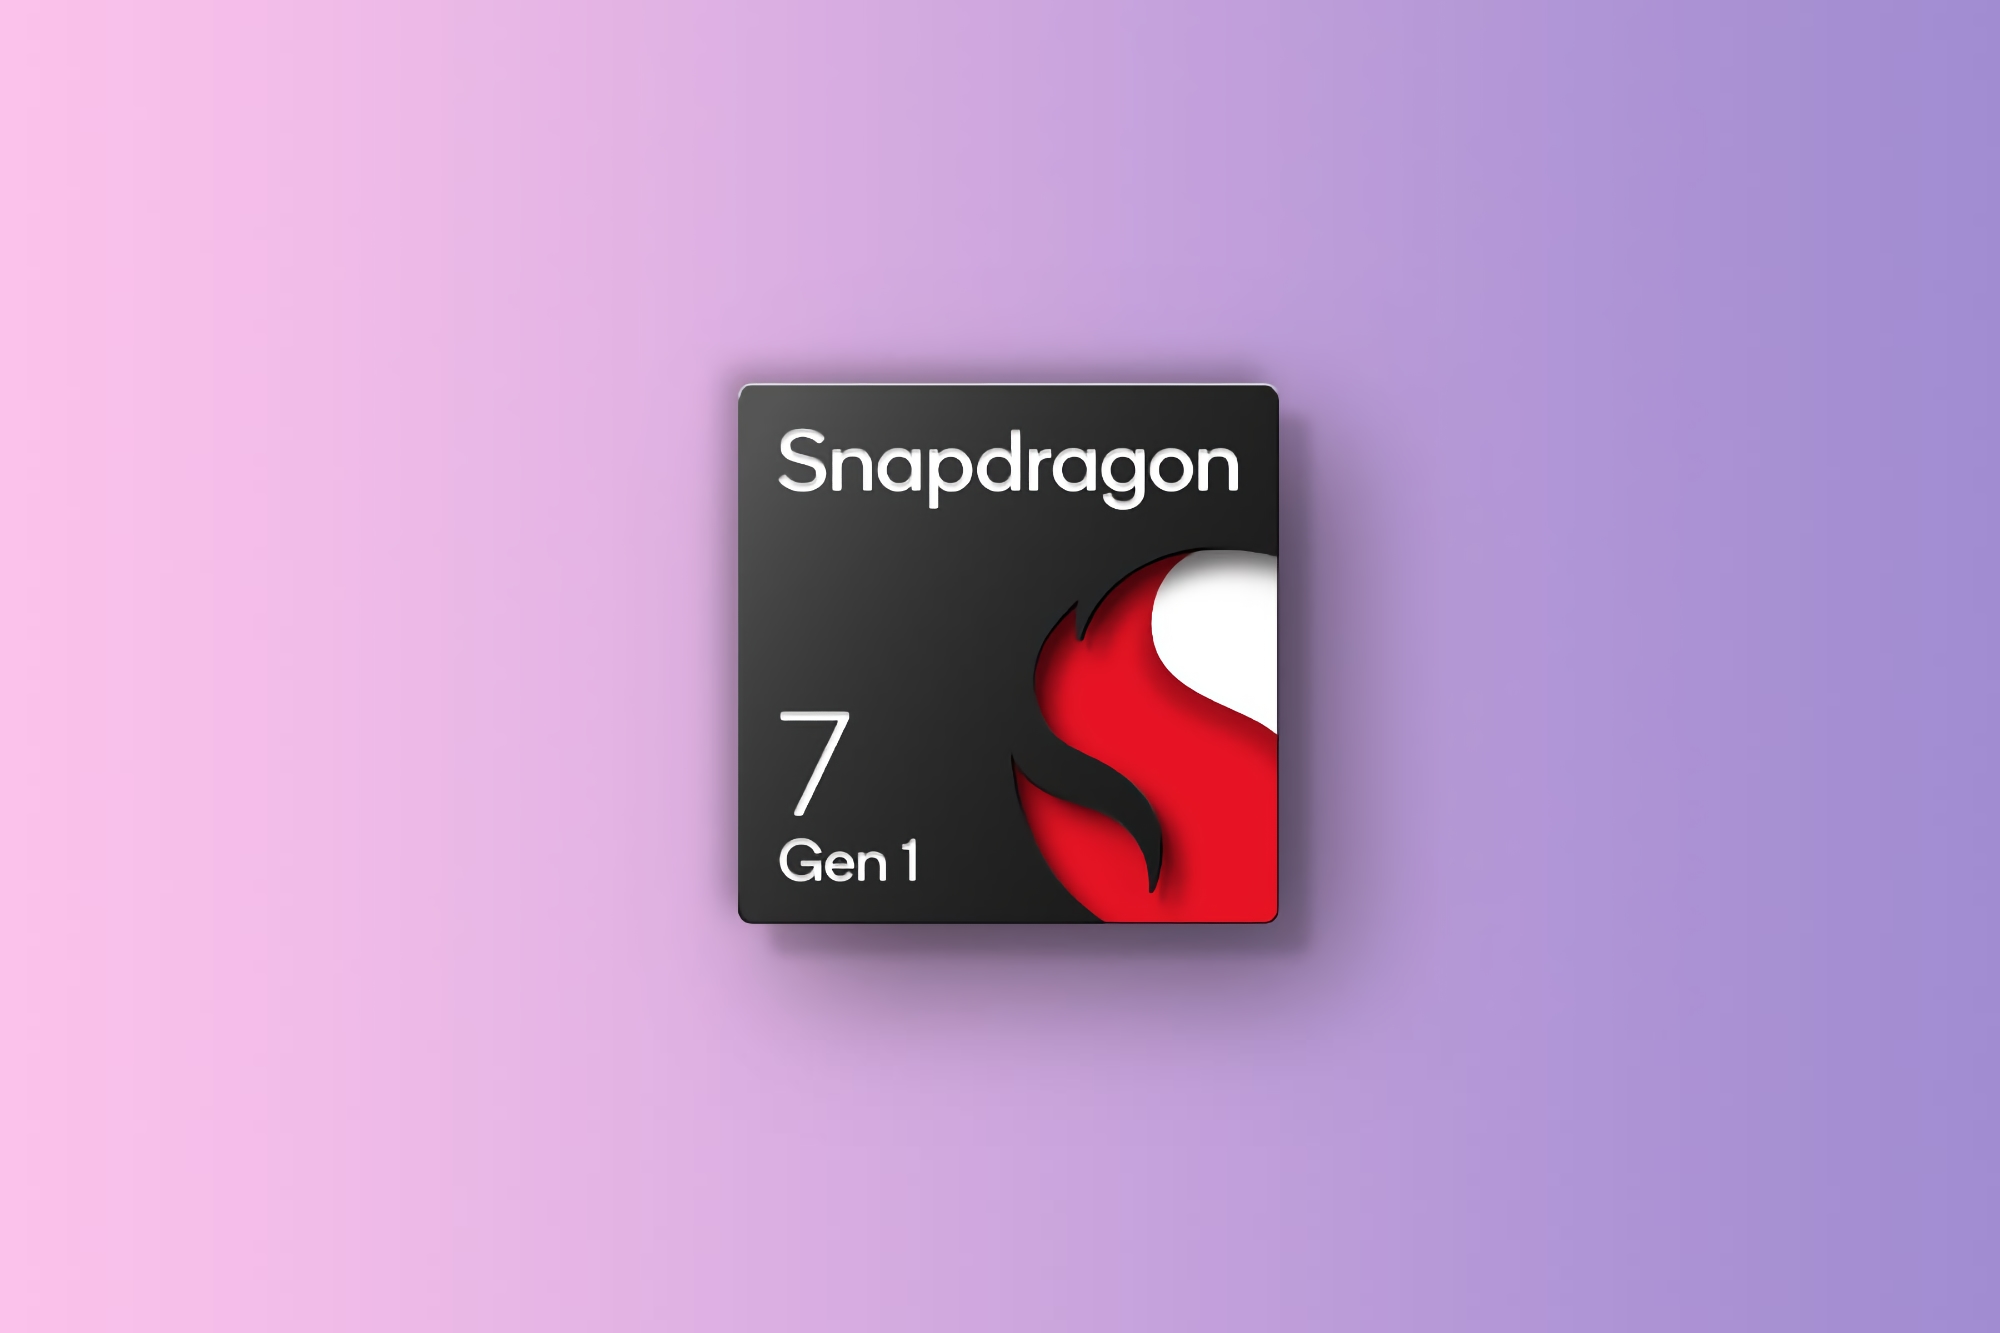 Наступник Snapdragon 7 Gen 1: Qualcomm працює над новим чипом Snapdragon 7 Series з трьохкластерною структурою ядер і частотою 2.4 ГГц